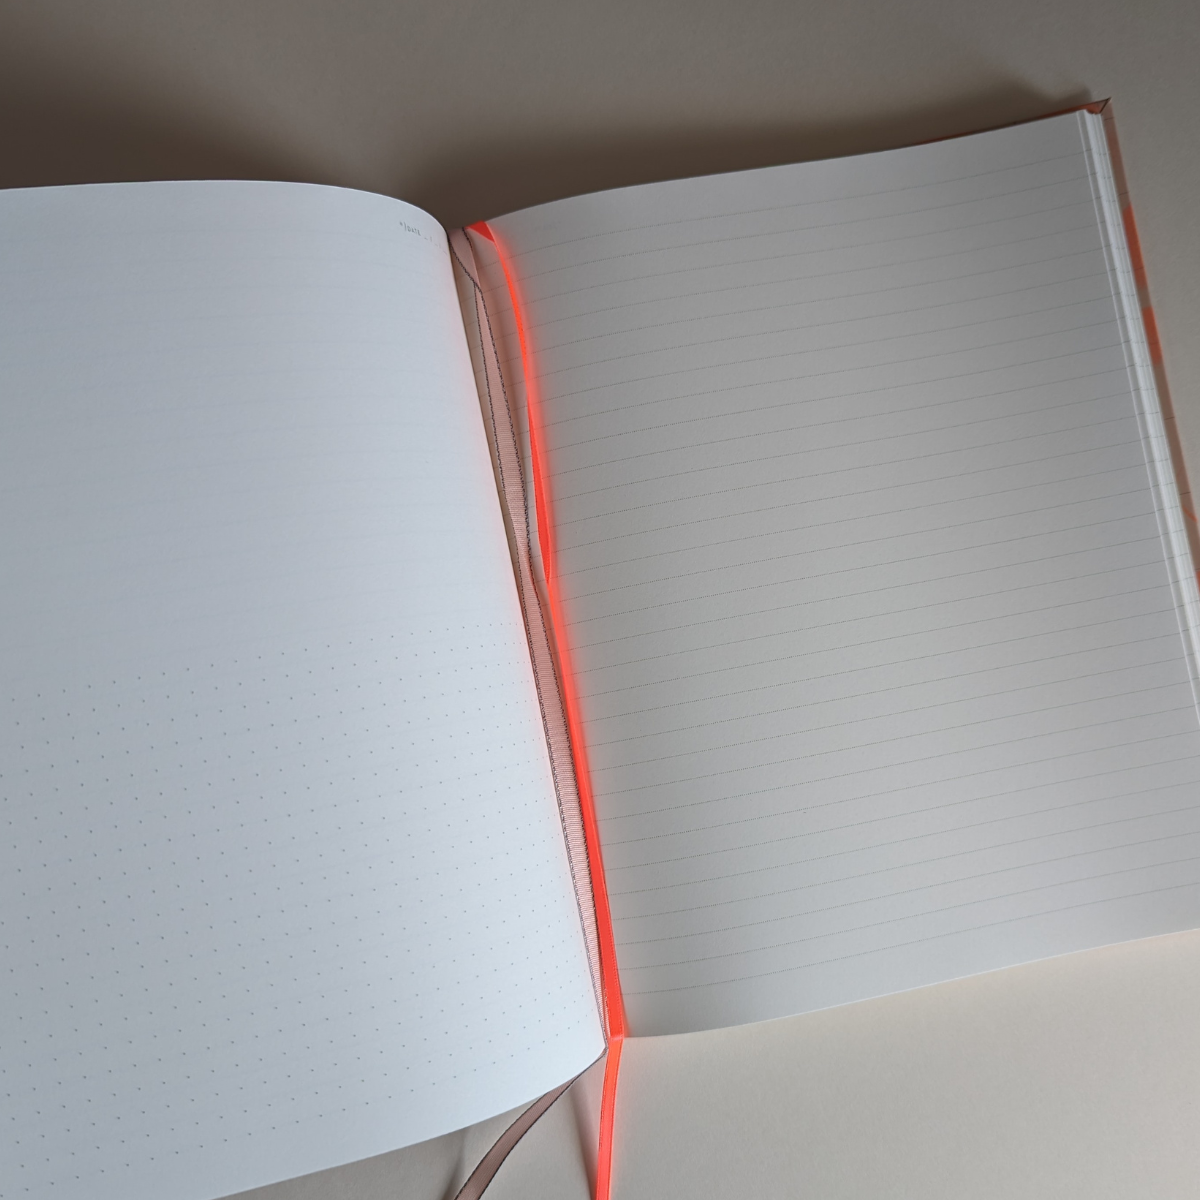 Amoureux des lignes, des pointillés et des pages blanches ce cahier est fait pour vous ! Les pages de droite sont lignées pour l'écriture, tandis que celles de gauche sont divisées en deux, offrant une partie vierge et une partie pointillée.